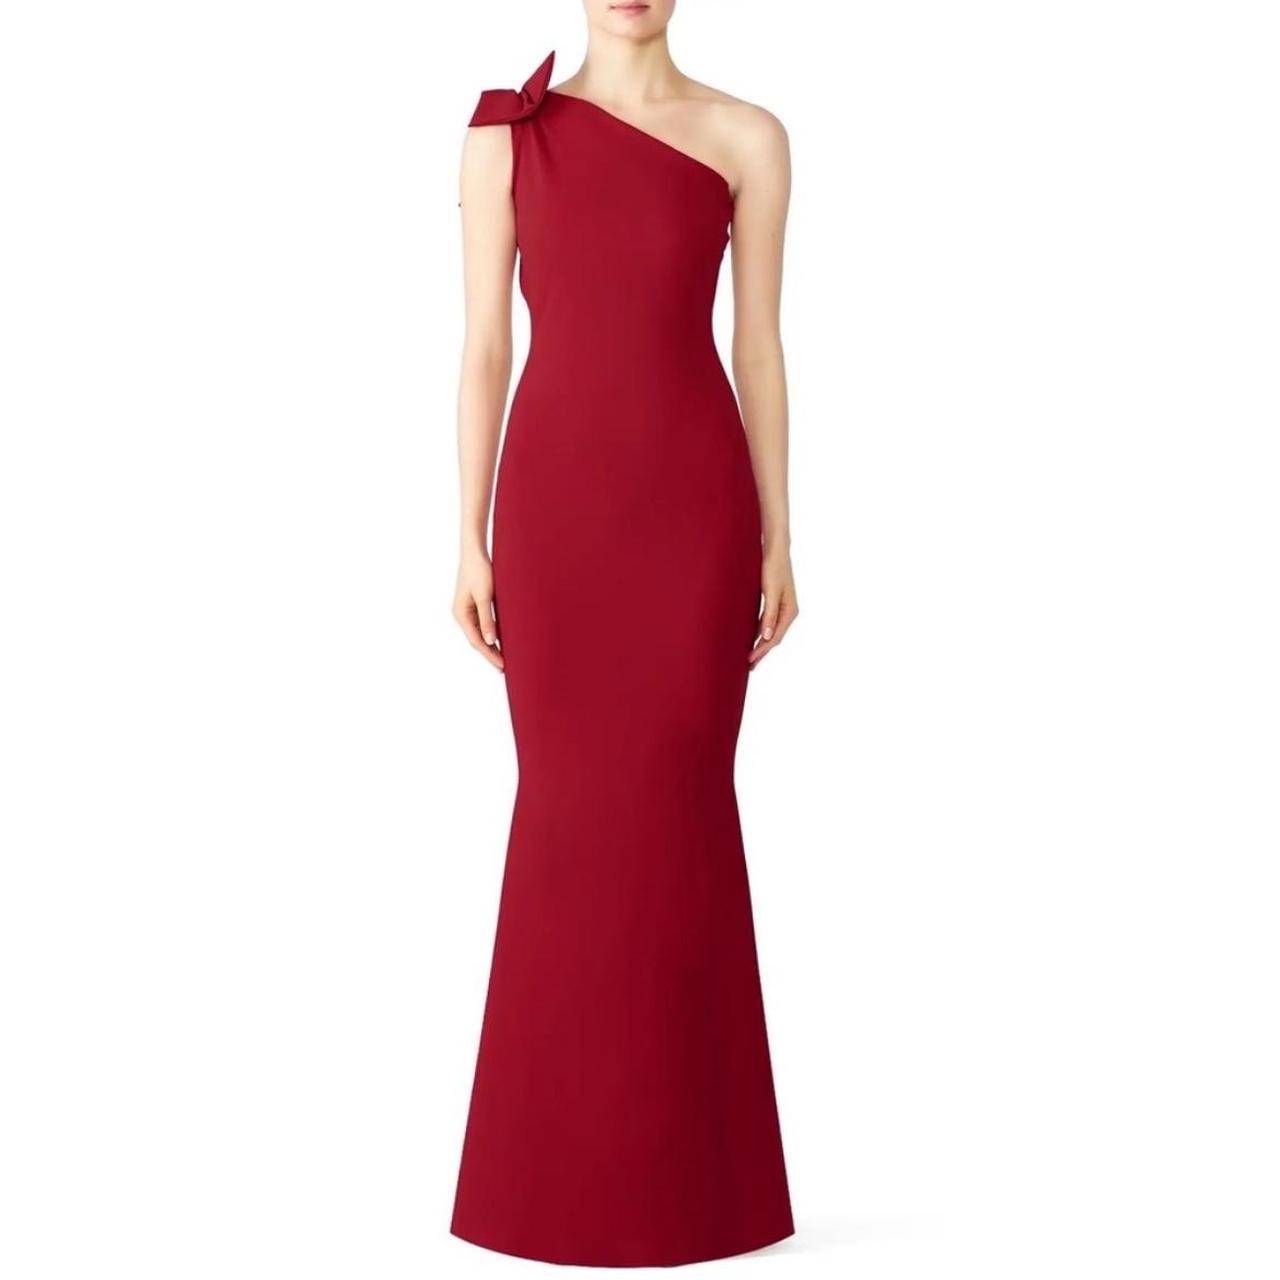 Chiara Boni La Petite Robe Women's Red Dress